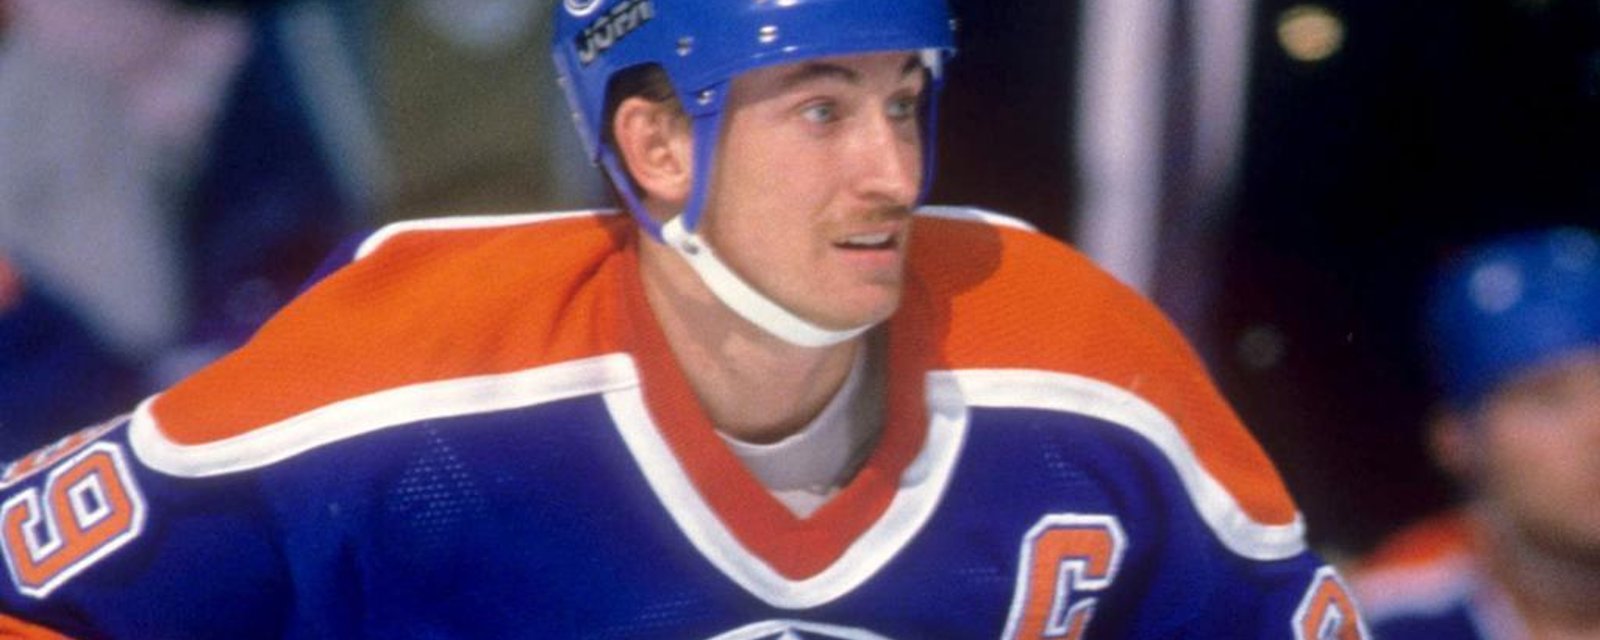 Quelques faits incroyables sur la carrière de Wayne Gretzky!